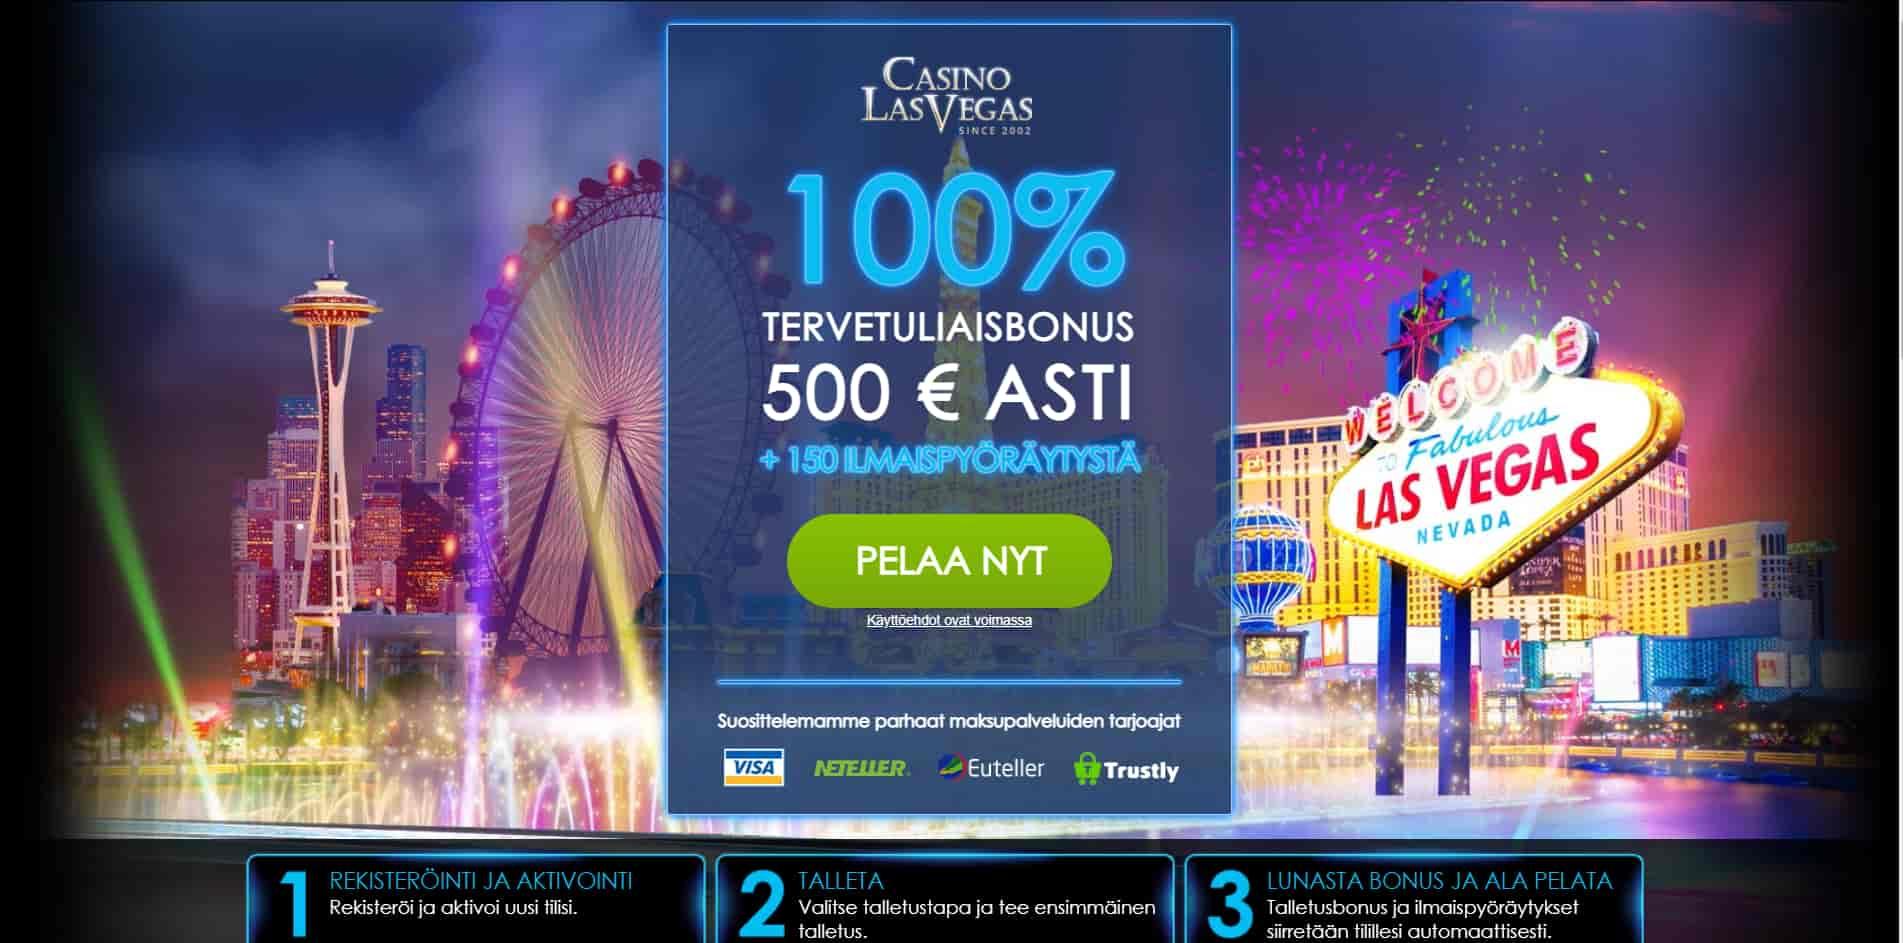 Casino Las Vegas casino homepage